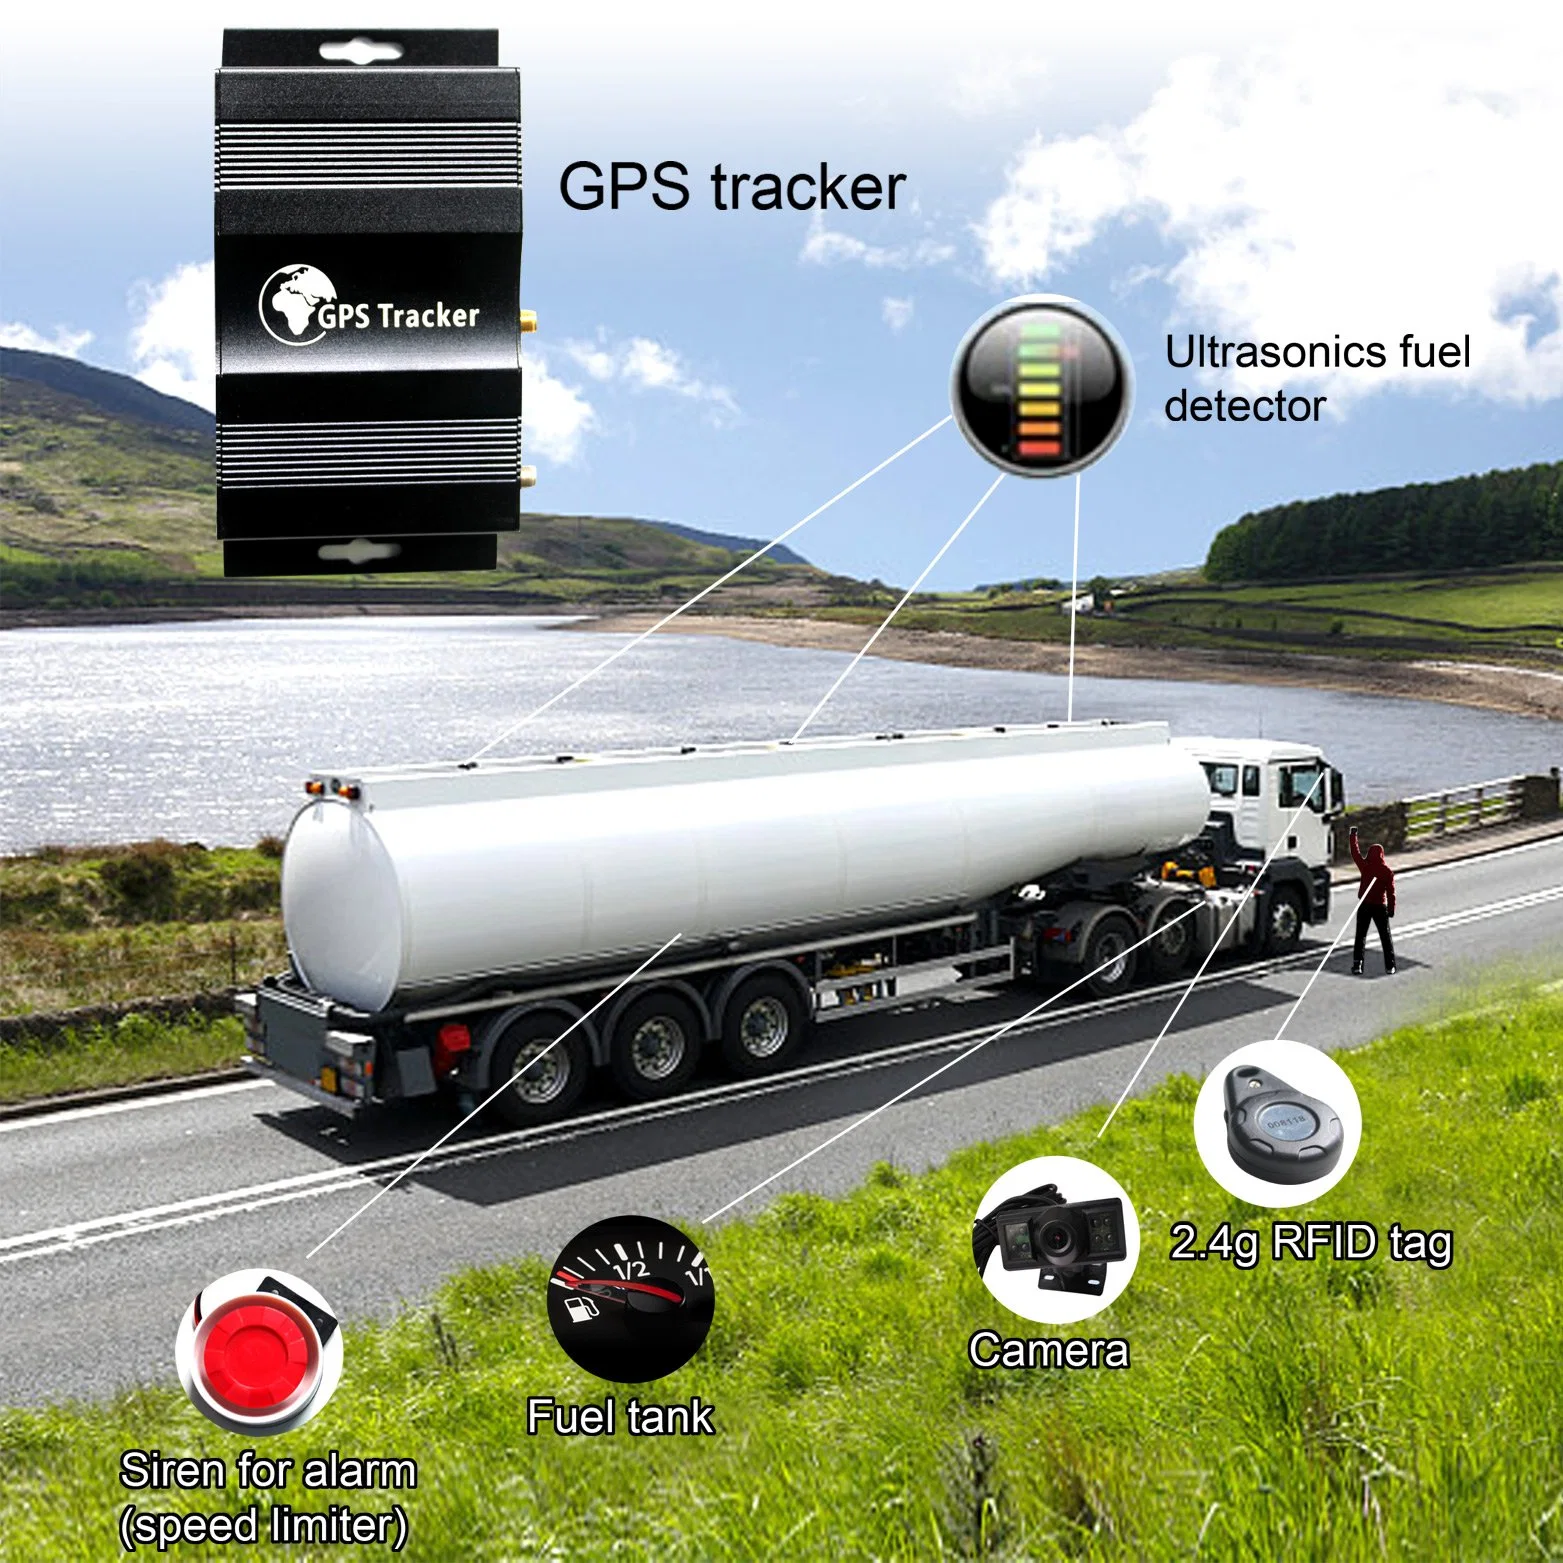 Sistema de alarme para automóvel com GPS Tracker RFID com câmara, combustível/sensor. Sensor para frota de veículos (TK510-TN)